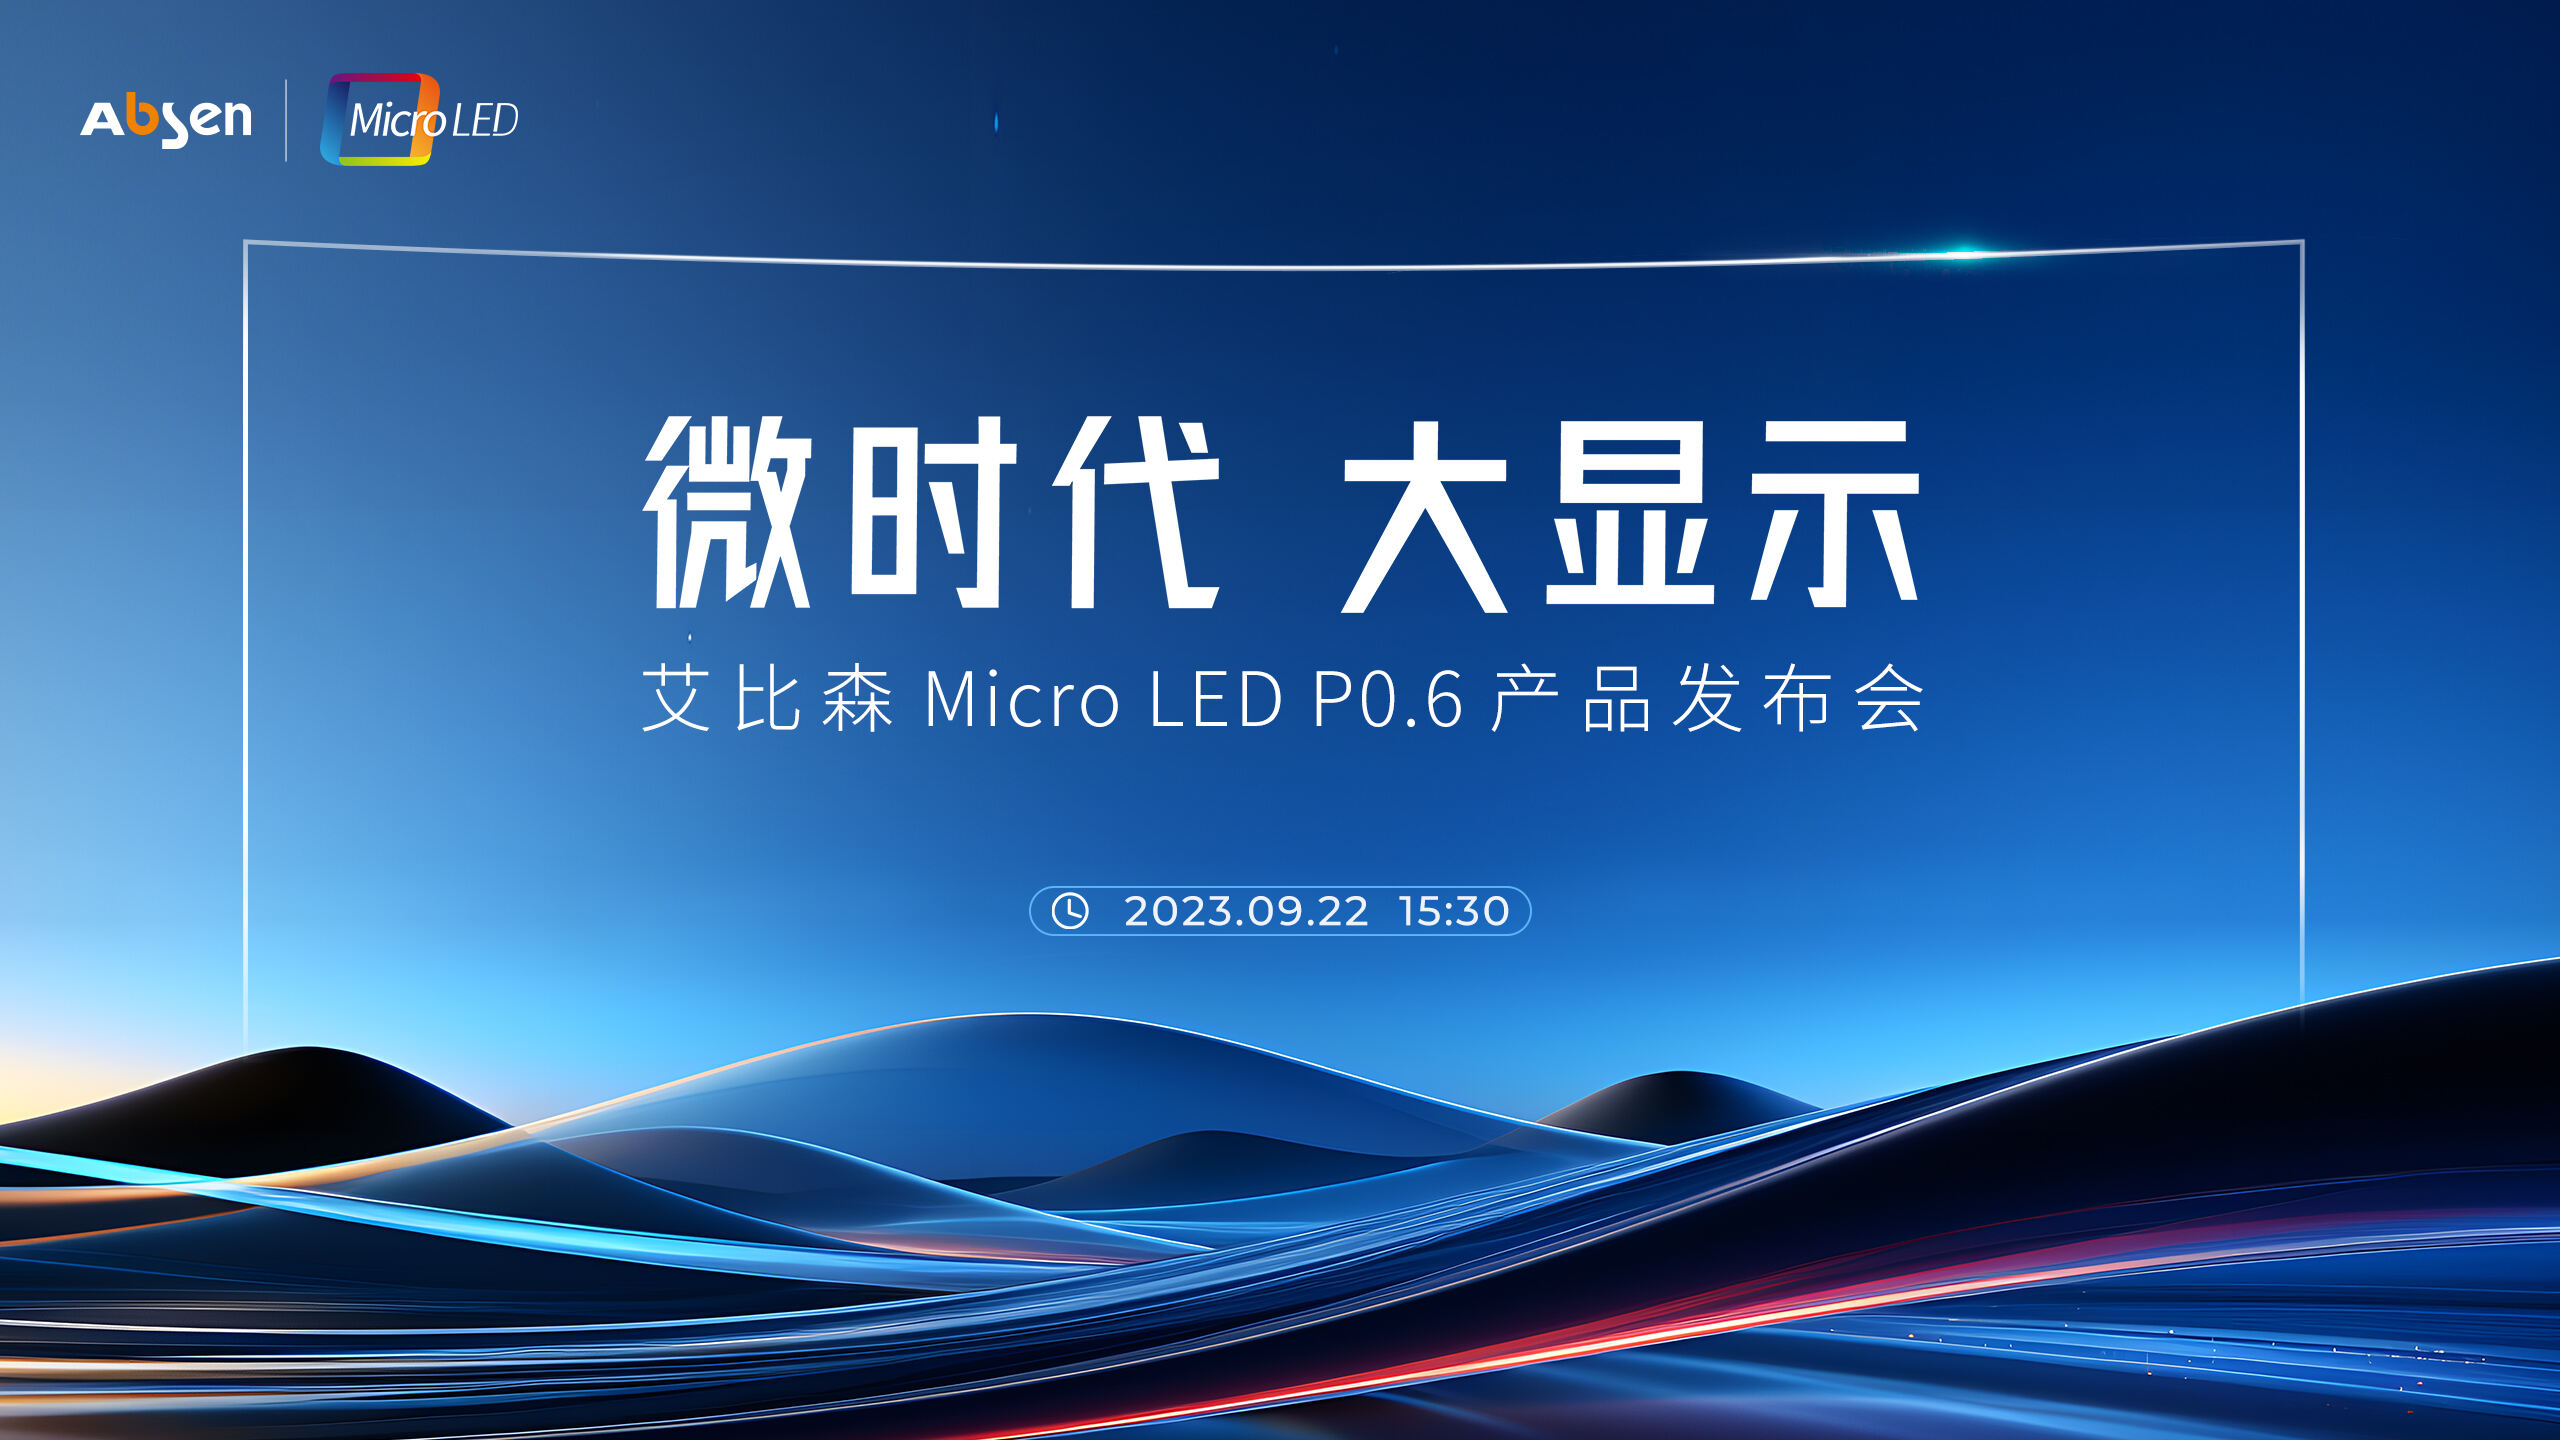 微时代 大显示丨尊龙凯时 Micro LED P0.6 产品重磅宣布